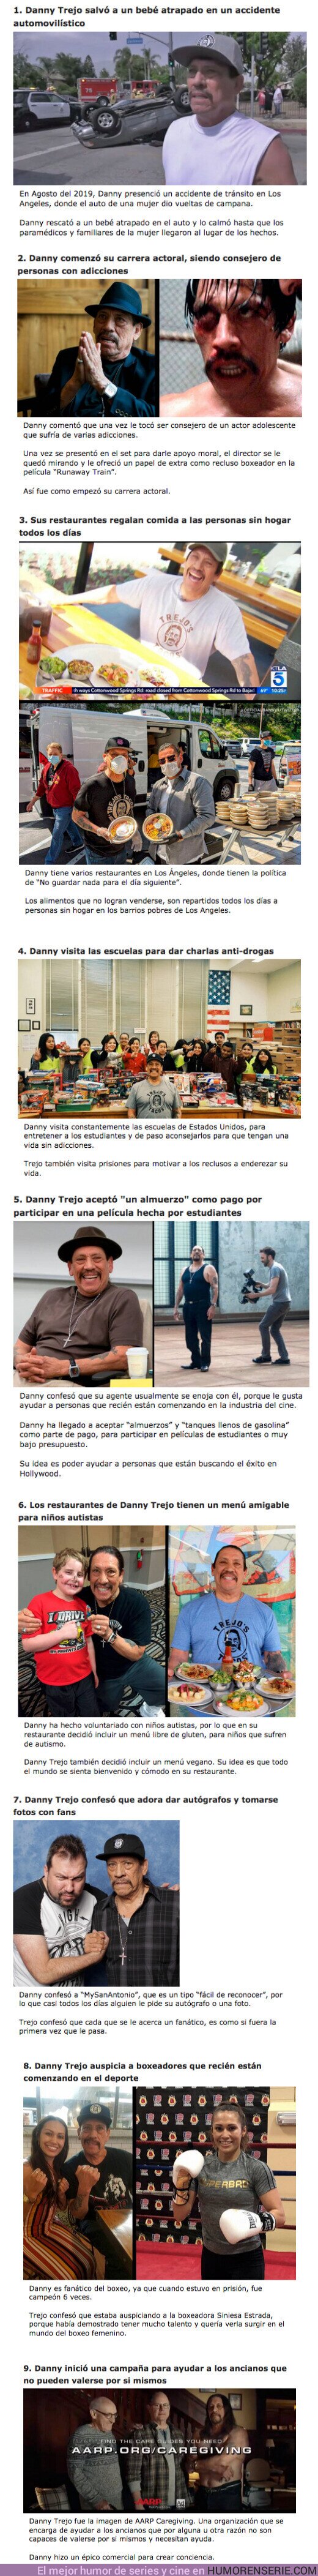 68567 - GALERÍA: 9 Veces en las que Danny Trejo demostró ser el “Tipo Rudo” más ADORABLE de Hollywood